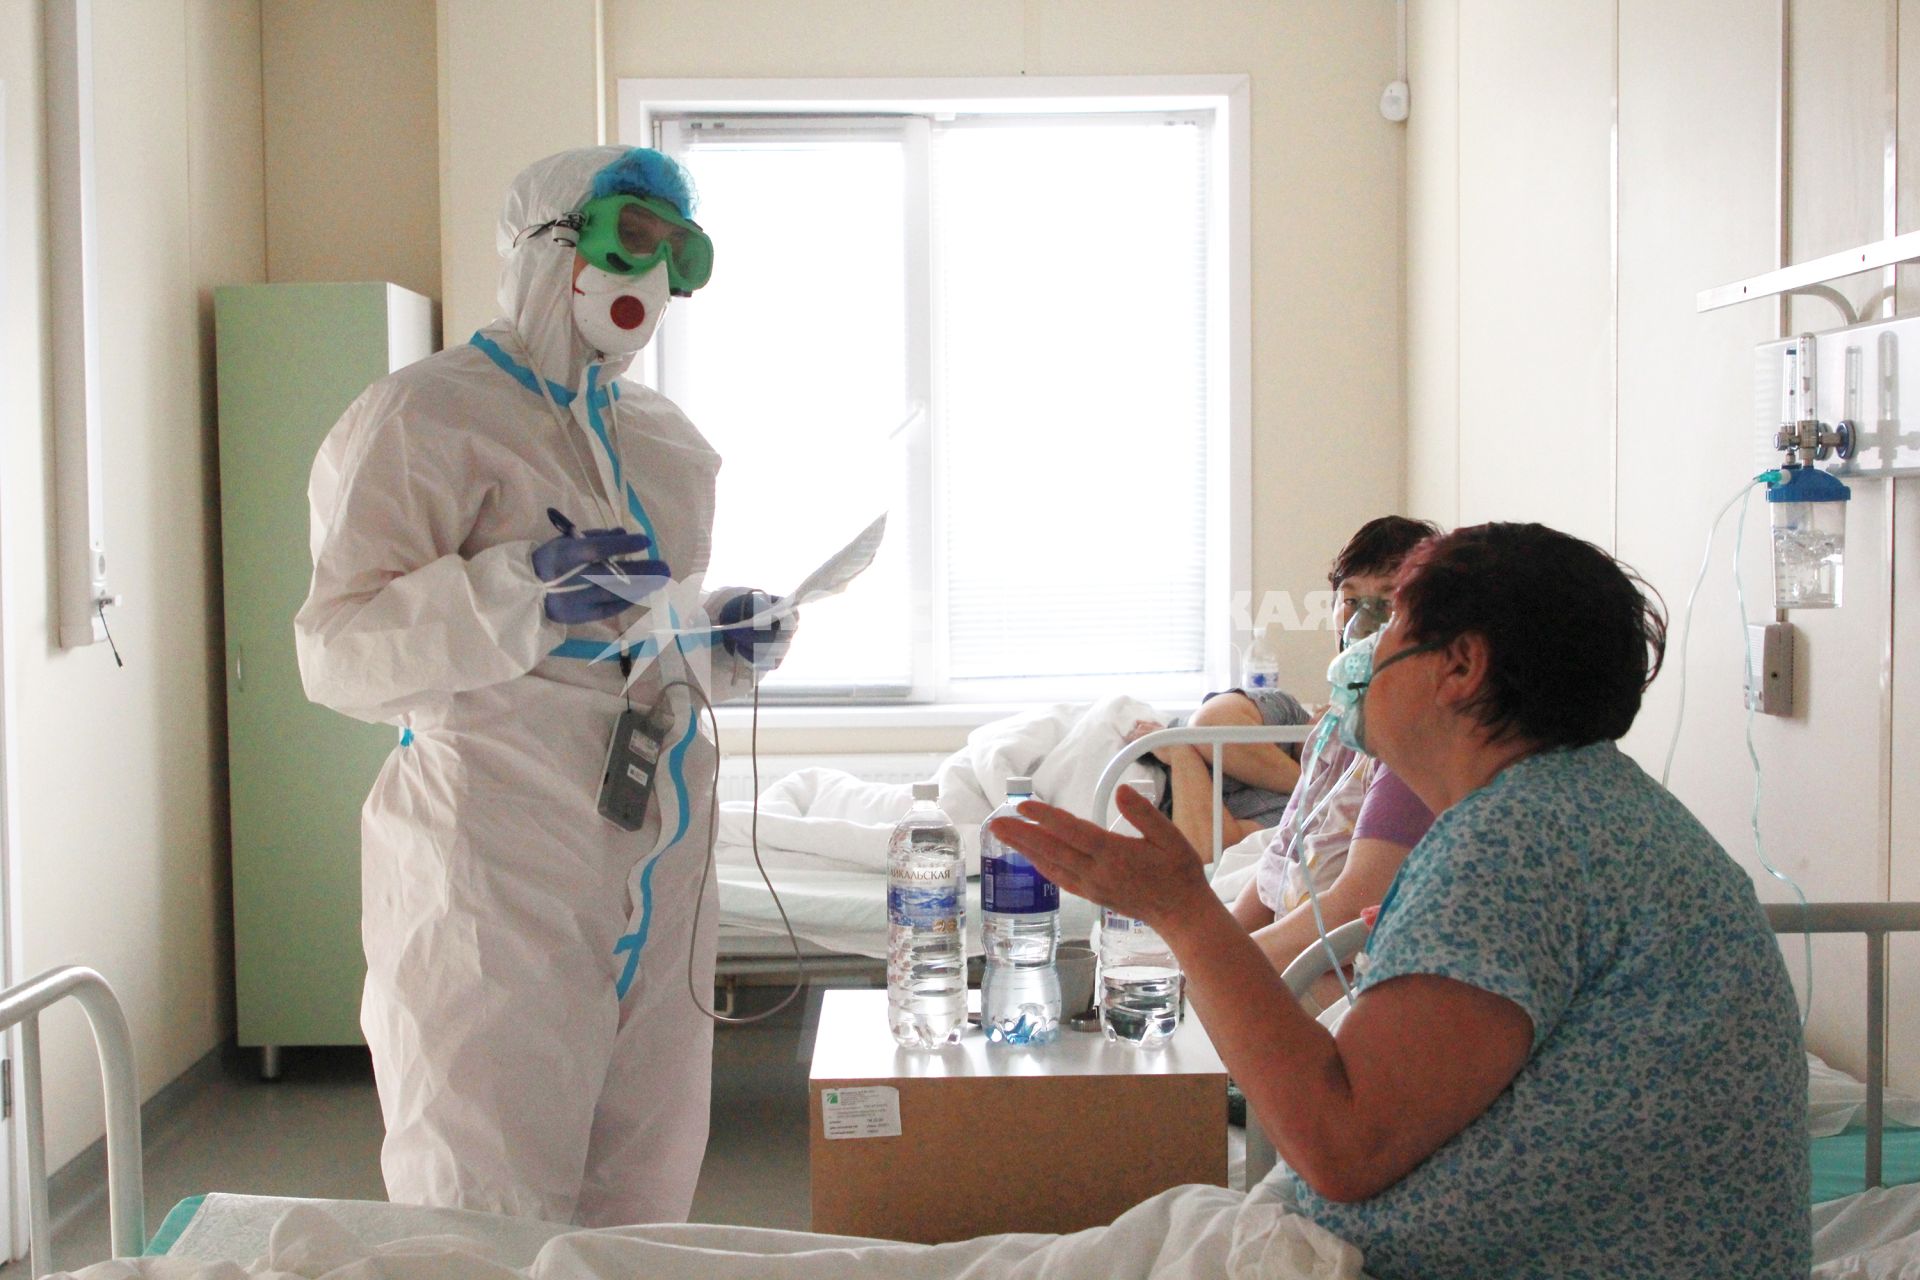 Иркутск. Медицинский работник и пациенты в больнице, где оказывают помощь пациентам с коронавирусной инфекцией COVID-19.